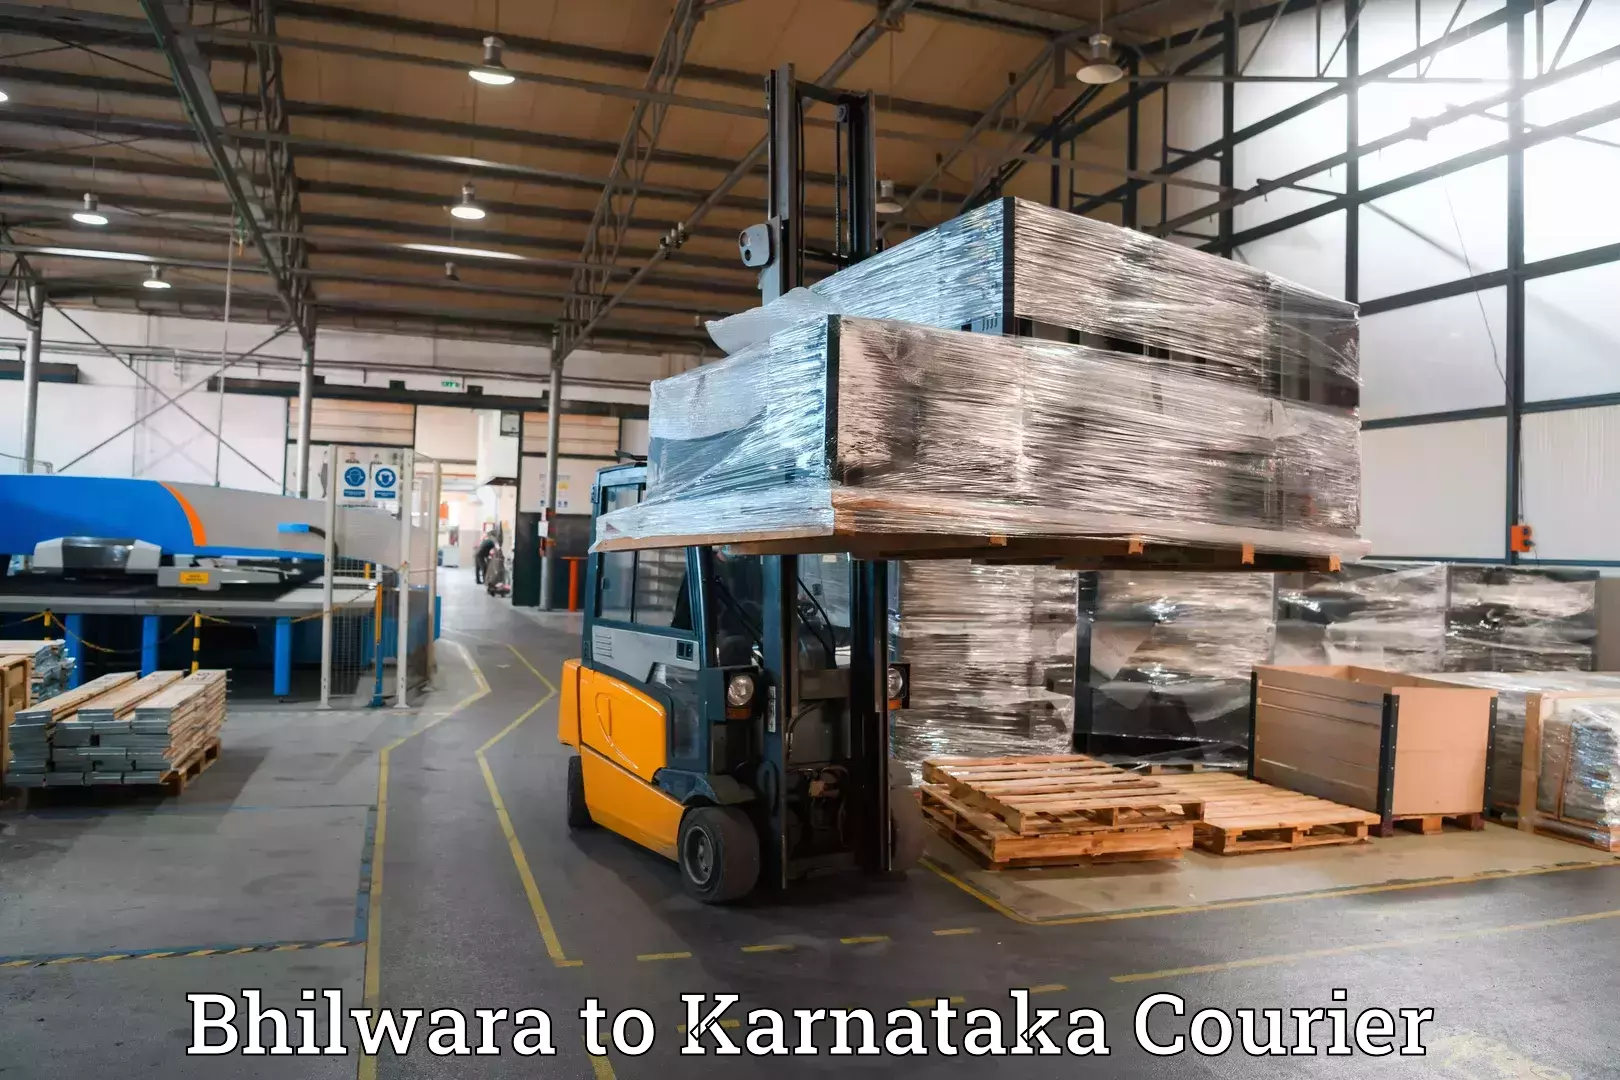 Baggage shipping logistics in Bhilwara to Karnataka